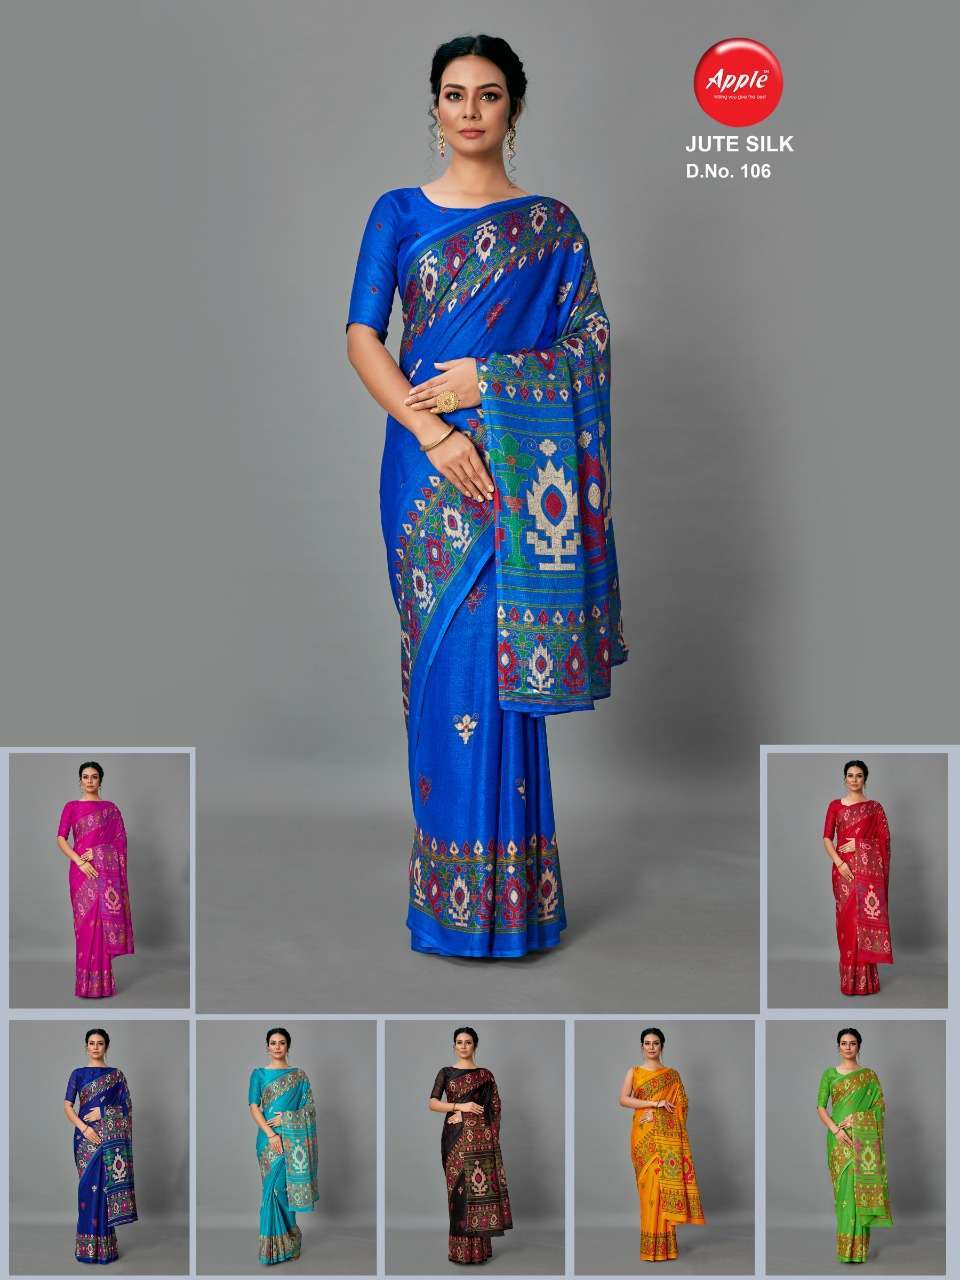 Apple Jute Silk series 101-108 cotton jute printed saree